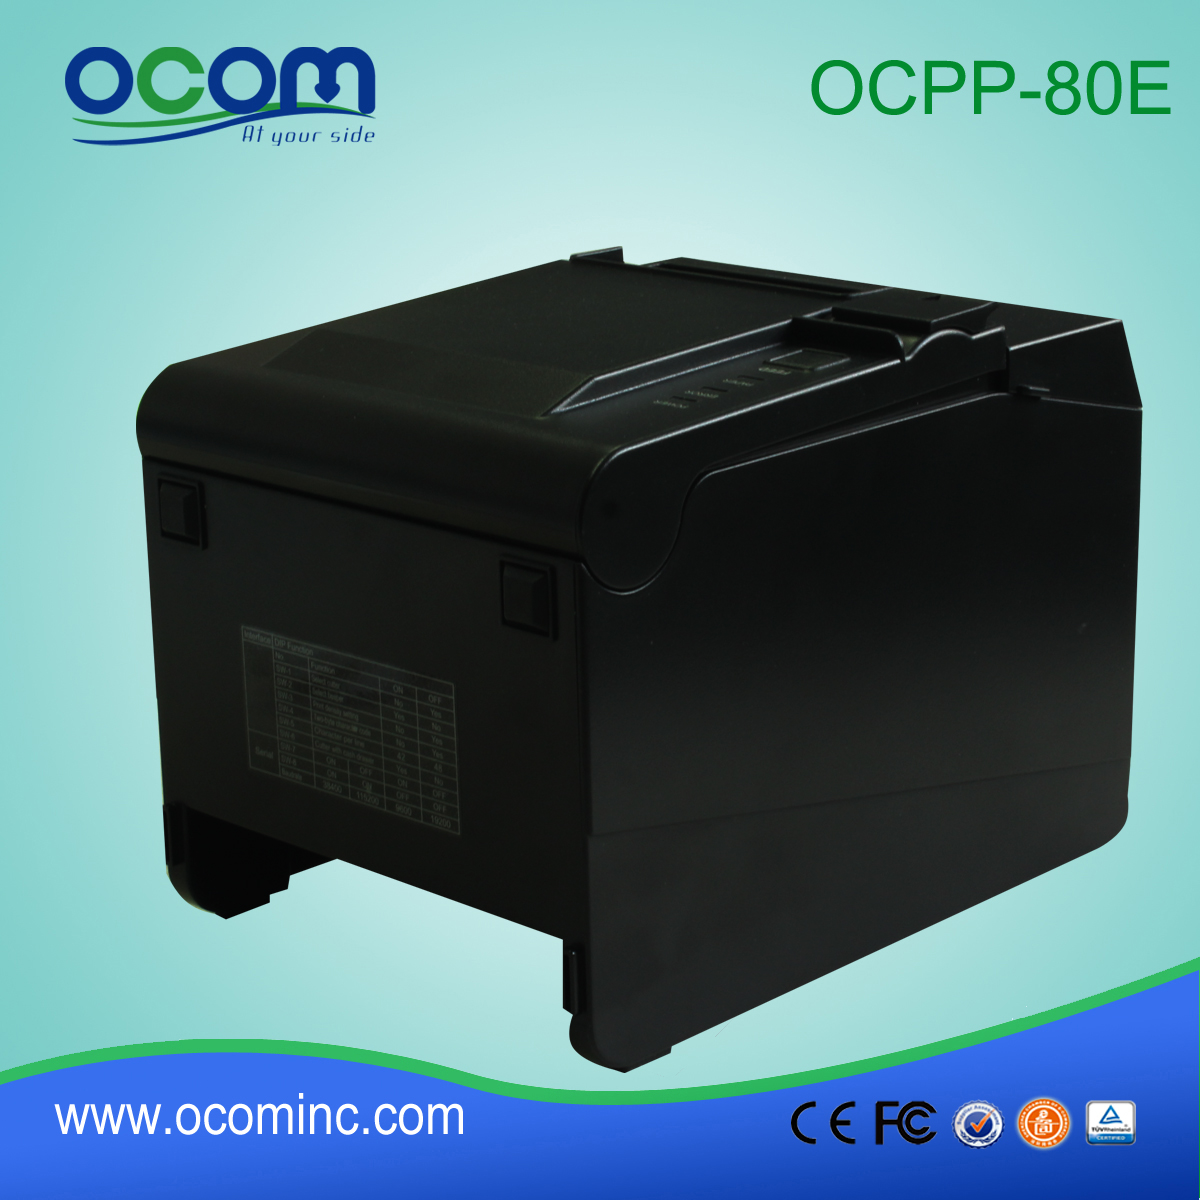 Cina fabbrica 80 millimetri di stampa rotolo di carta termica machine-OCPP-80E